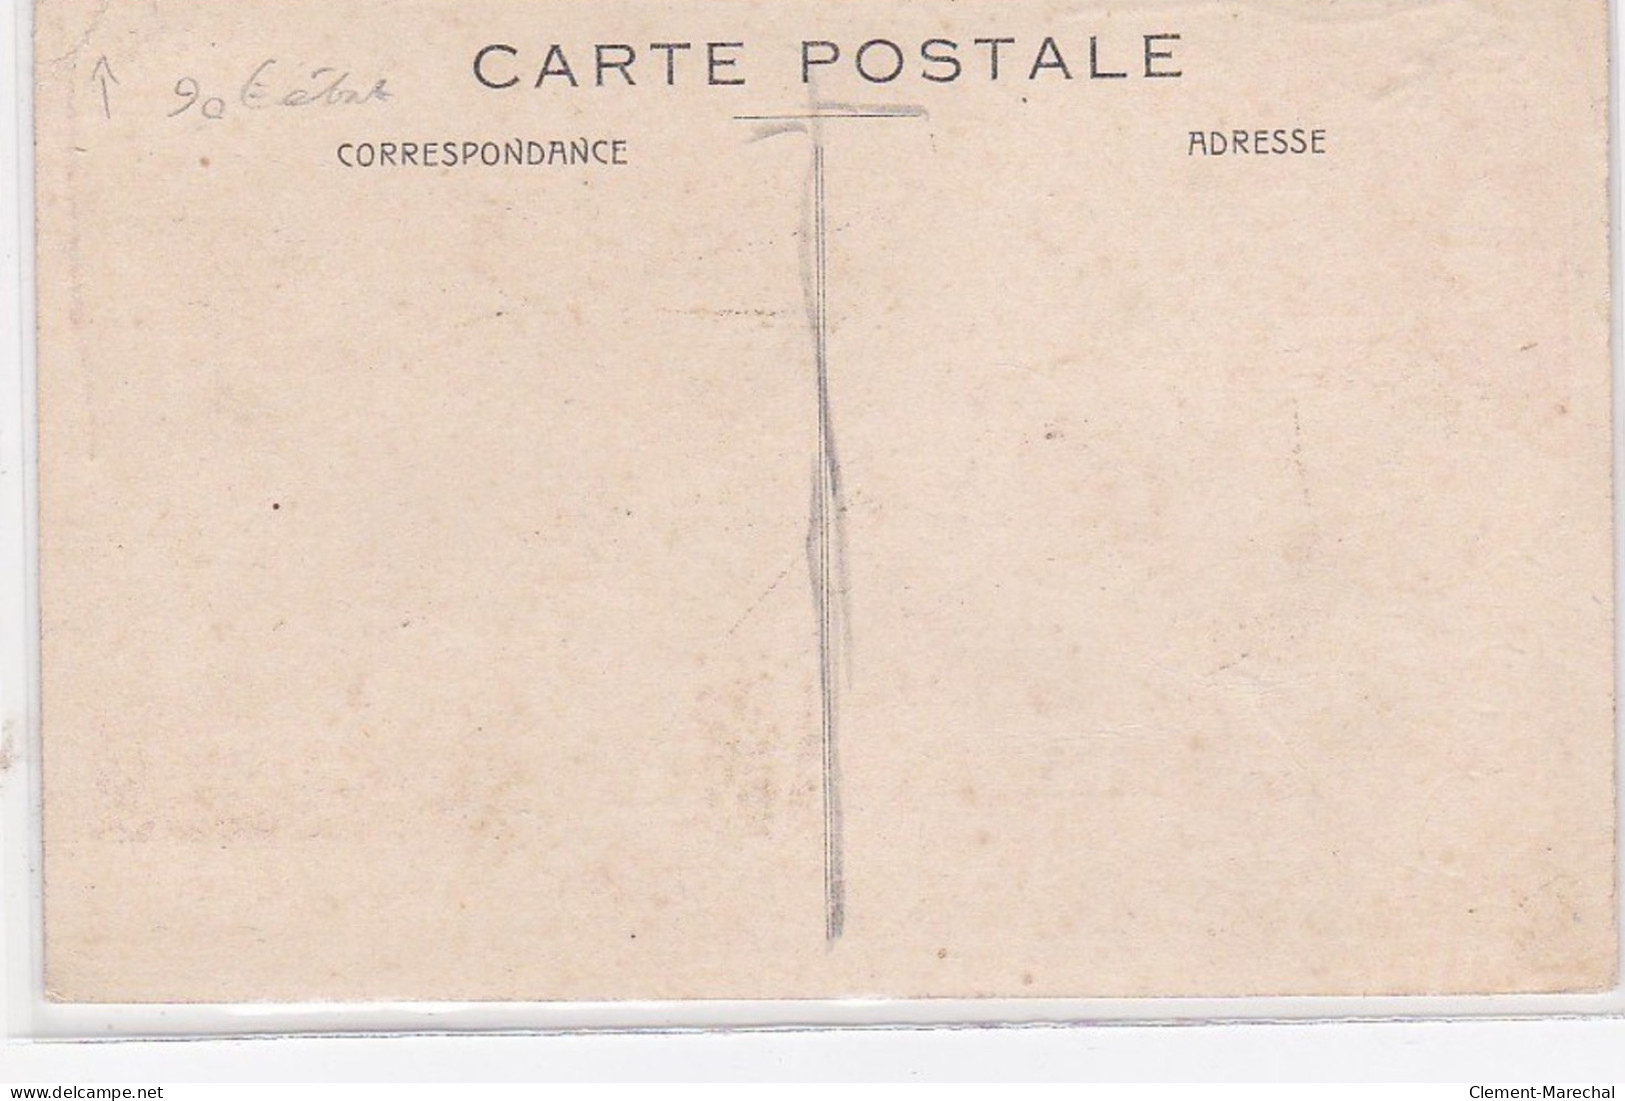 RABIER Benjamin : Carte Postale Ancienne - Publicité Pour Les Fromages "la Vache Qui Rit" - Bon état - Rabier, B.